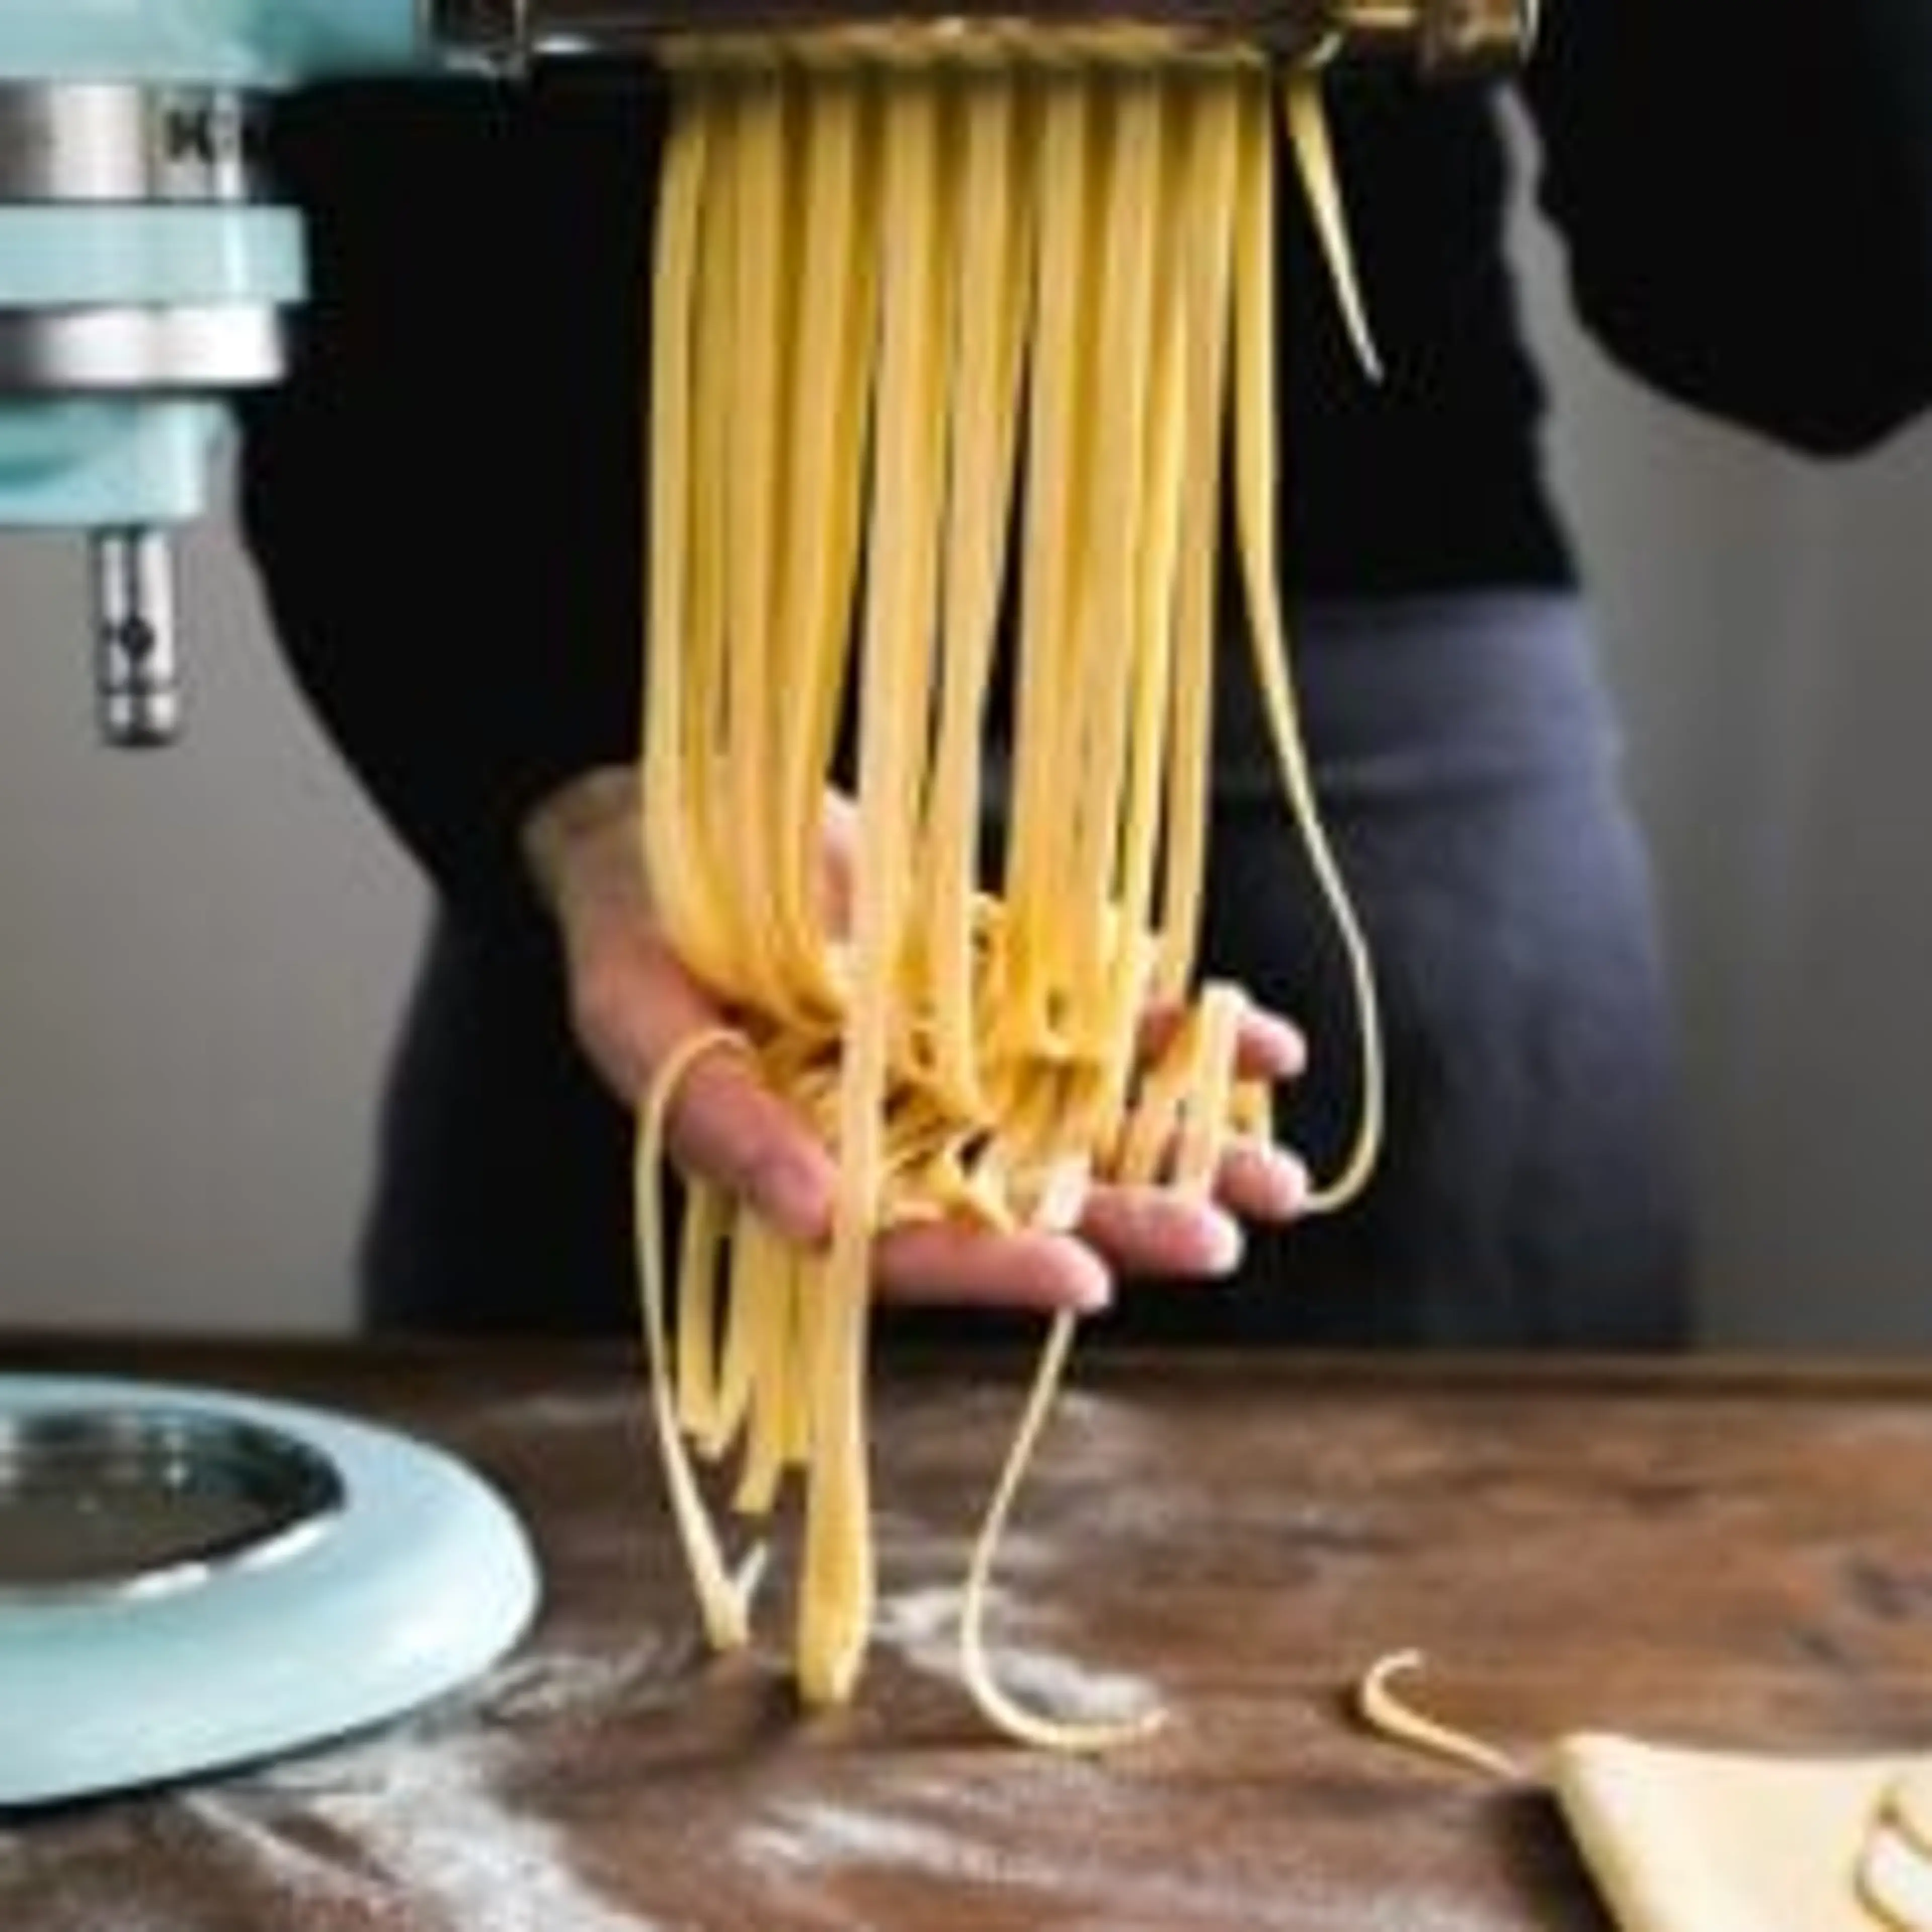 Beginner's Guide To Fresh Homemade Pasta